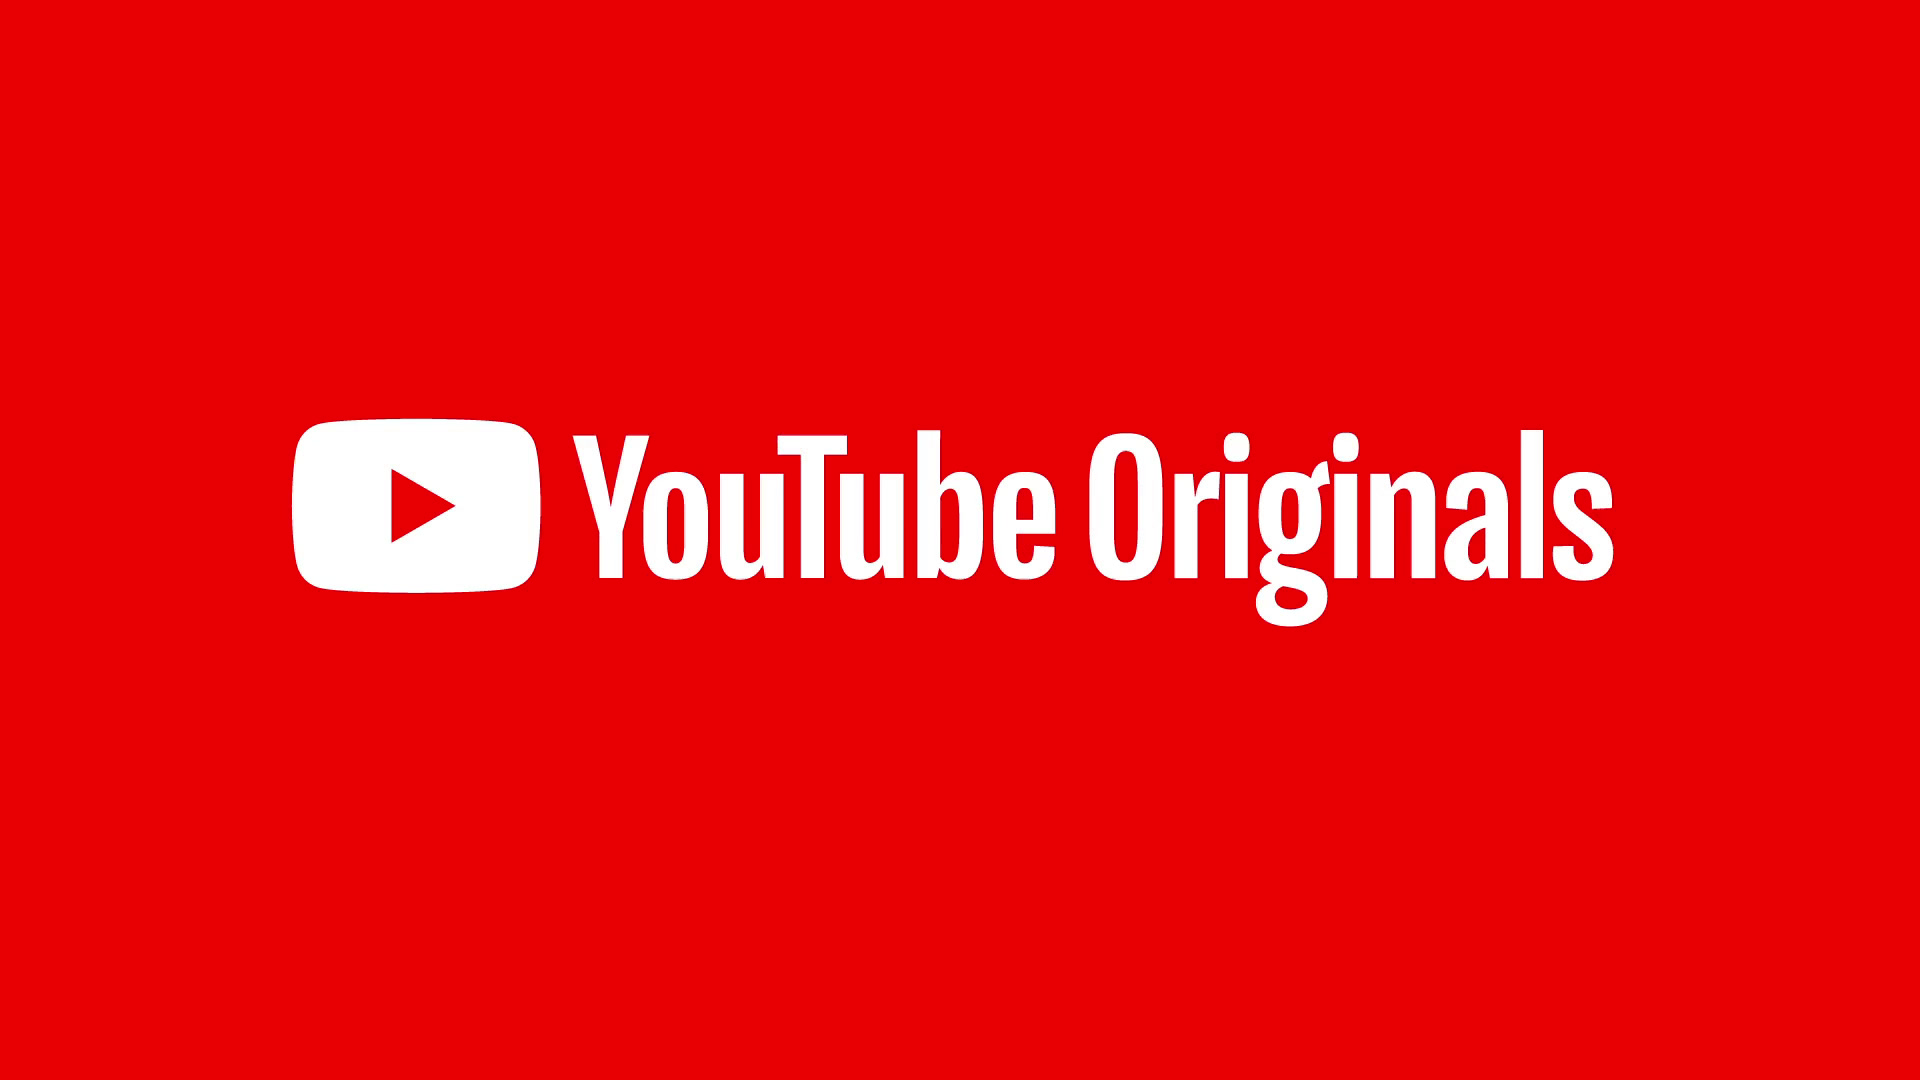 Сериалы и фильмы YouTube Originals скоро станут бесплатными